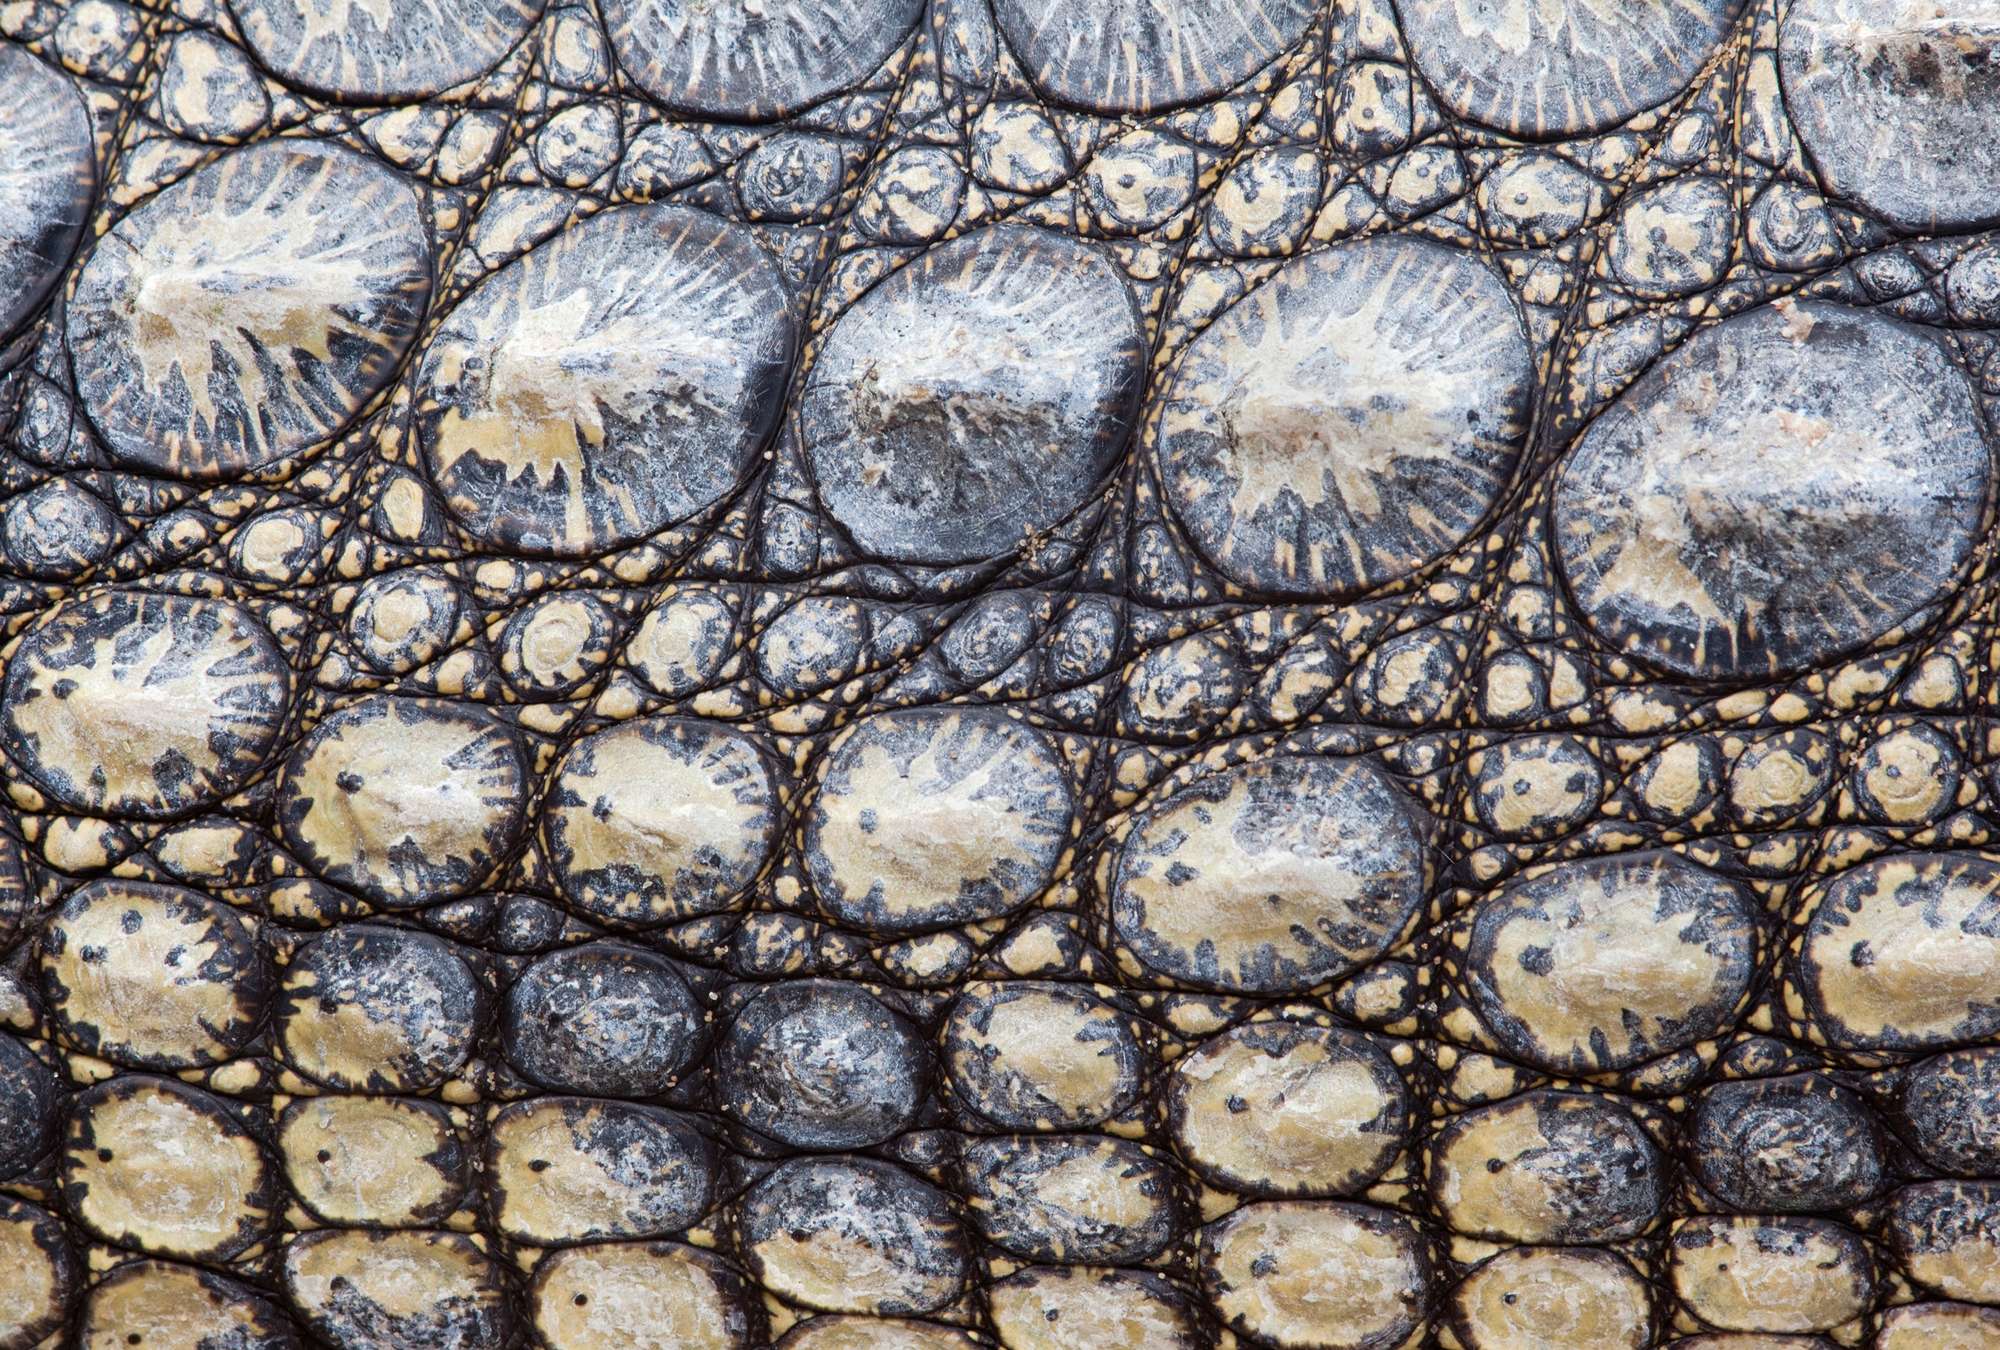             Pelle di coccodrillo - aspetto rettile con effetto 3D
        